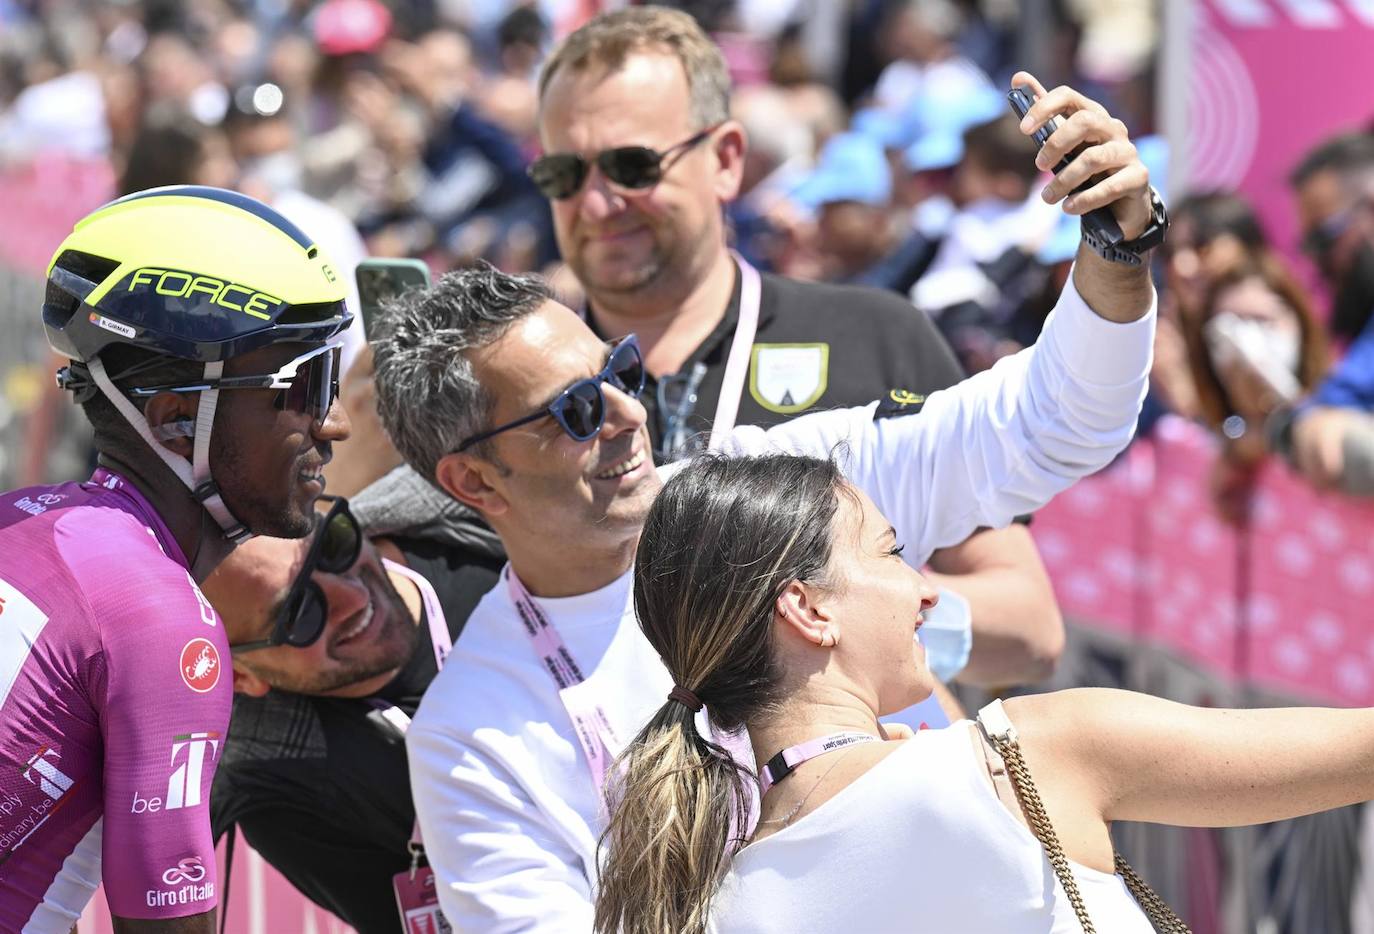 Fotos: La imágenes del Giro